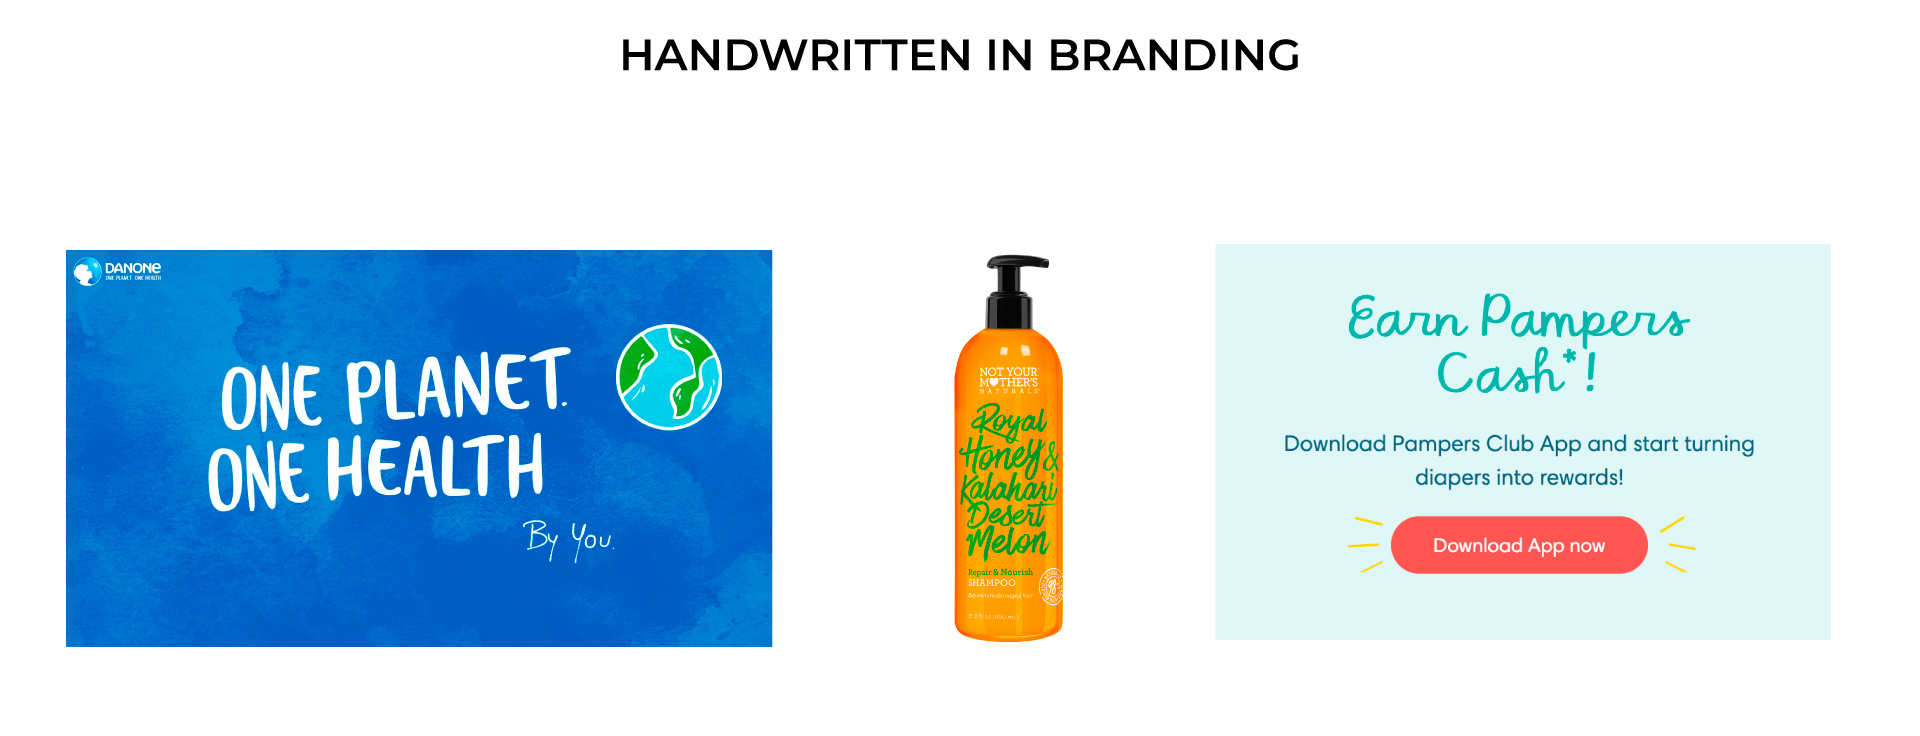 Handwritten and Script Typography in Branding Examples